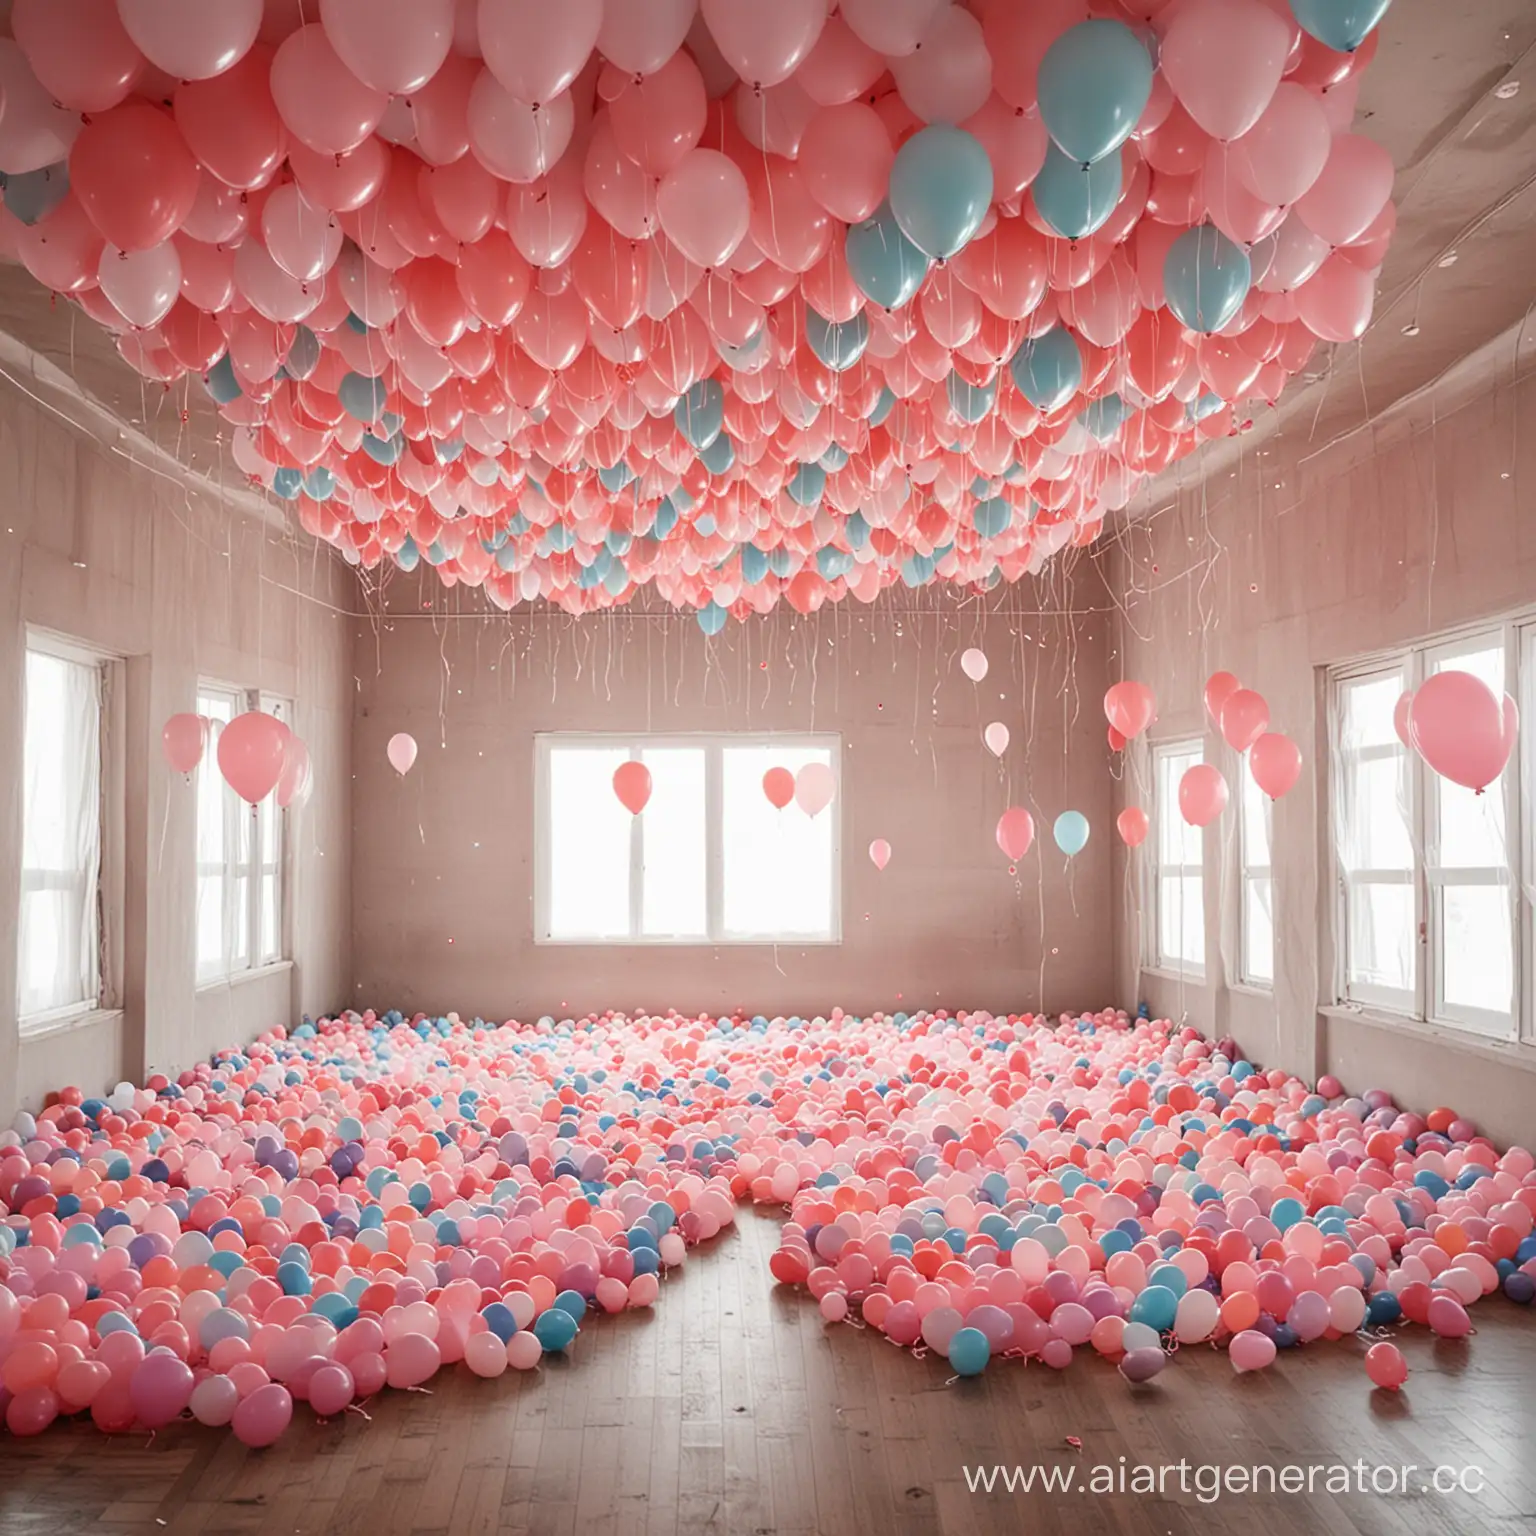 большая комната где много воздушных шаров